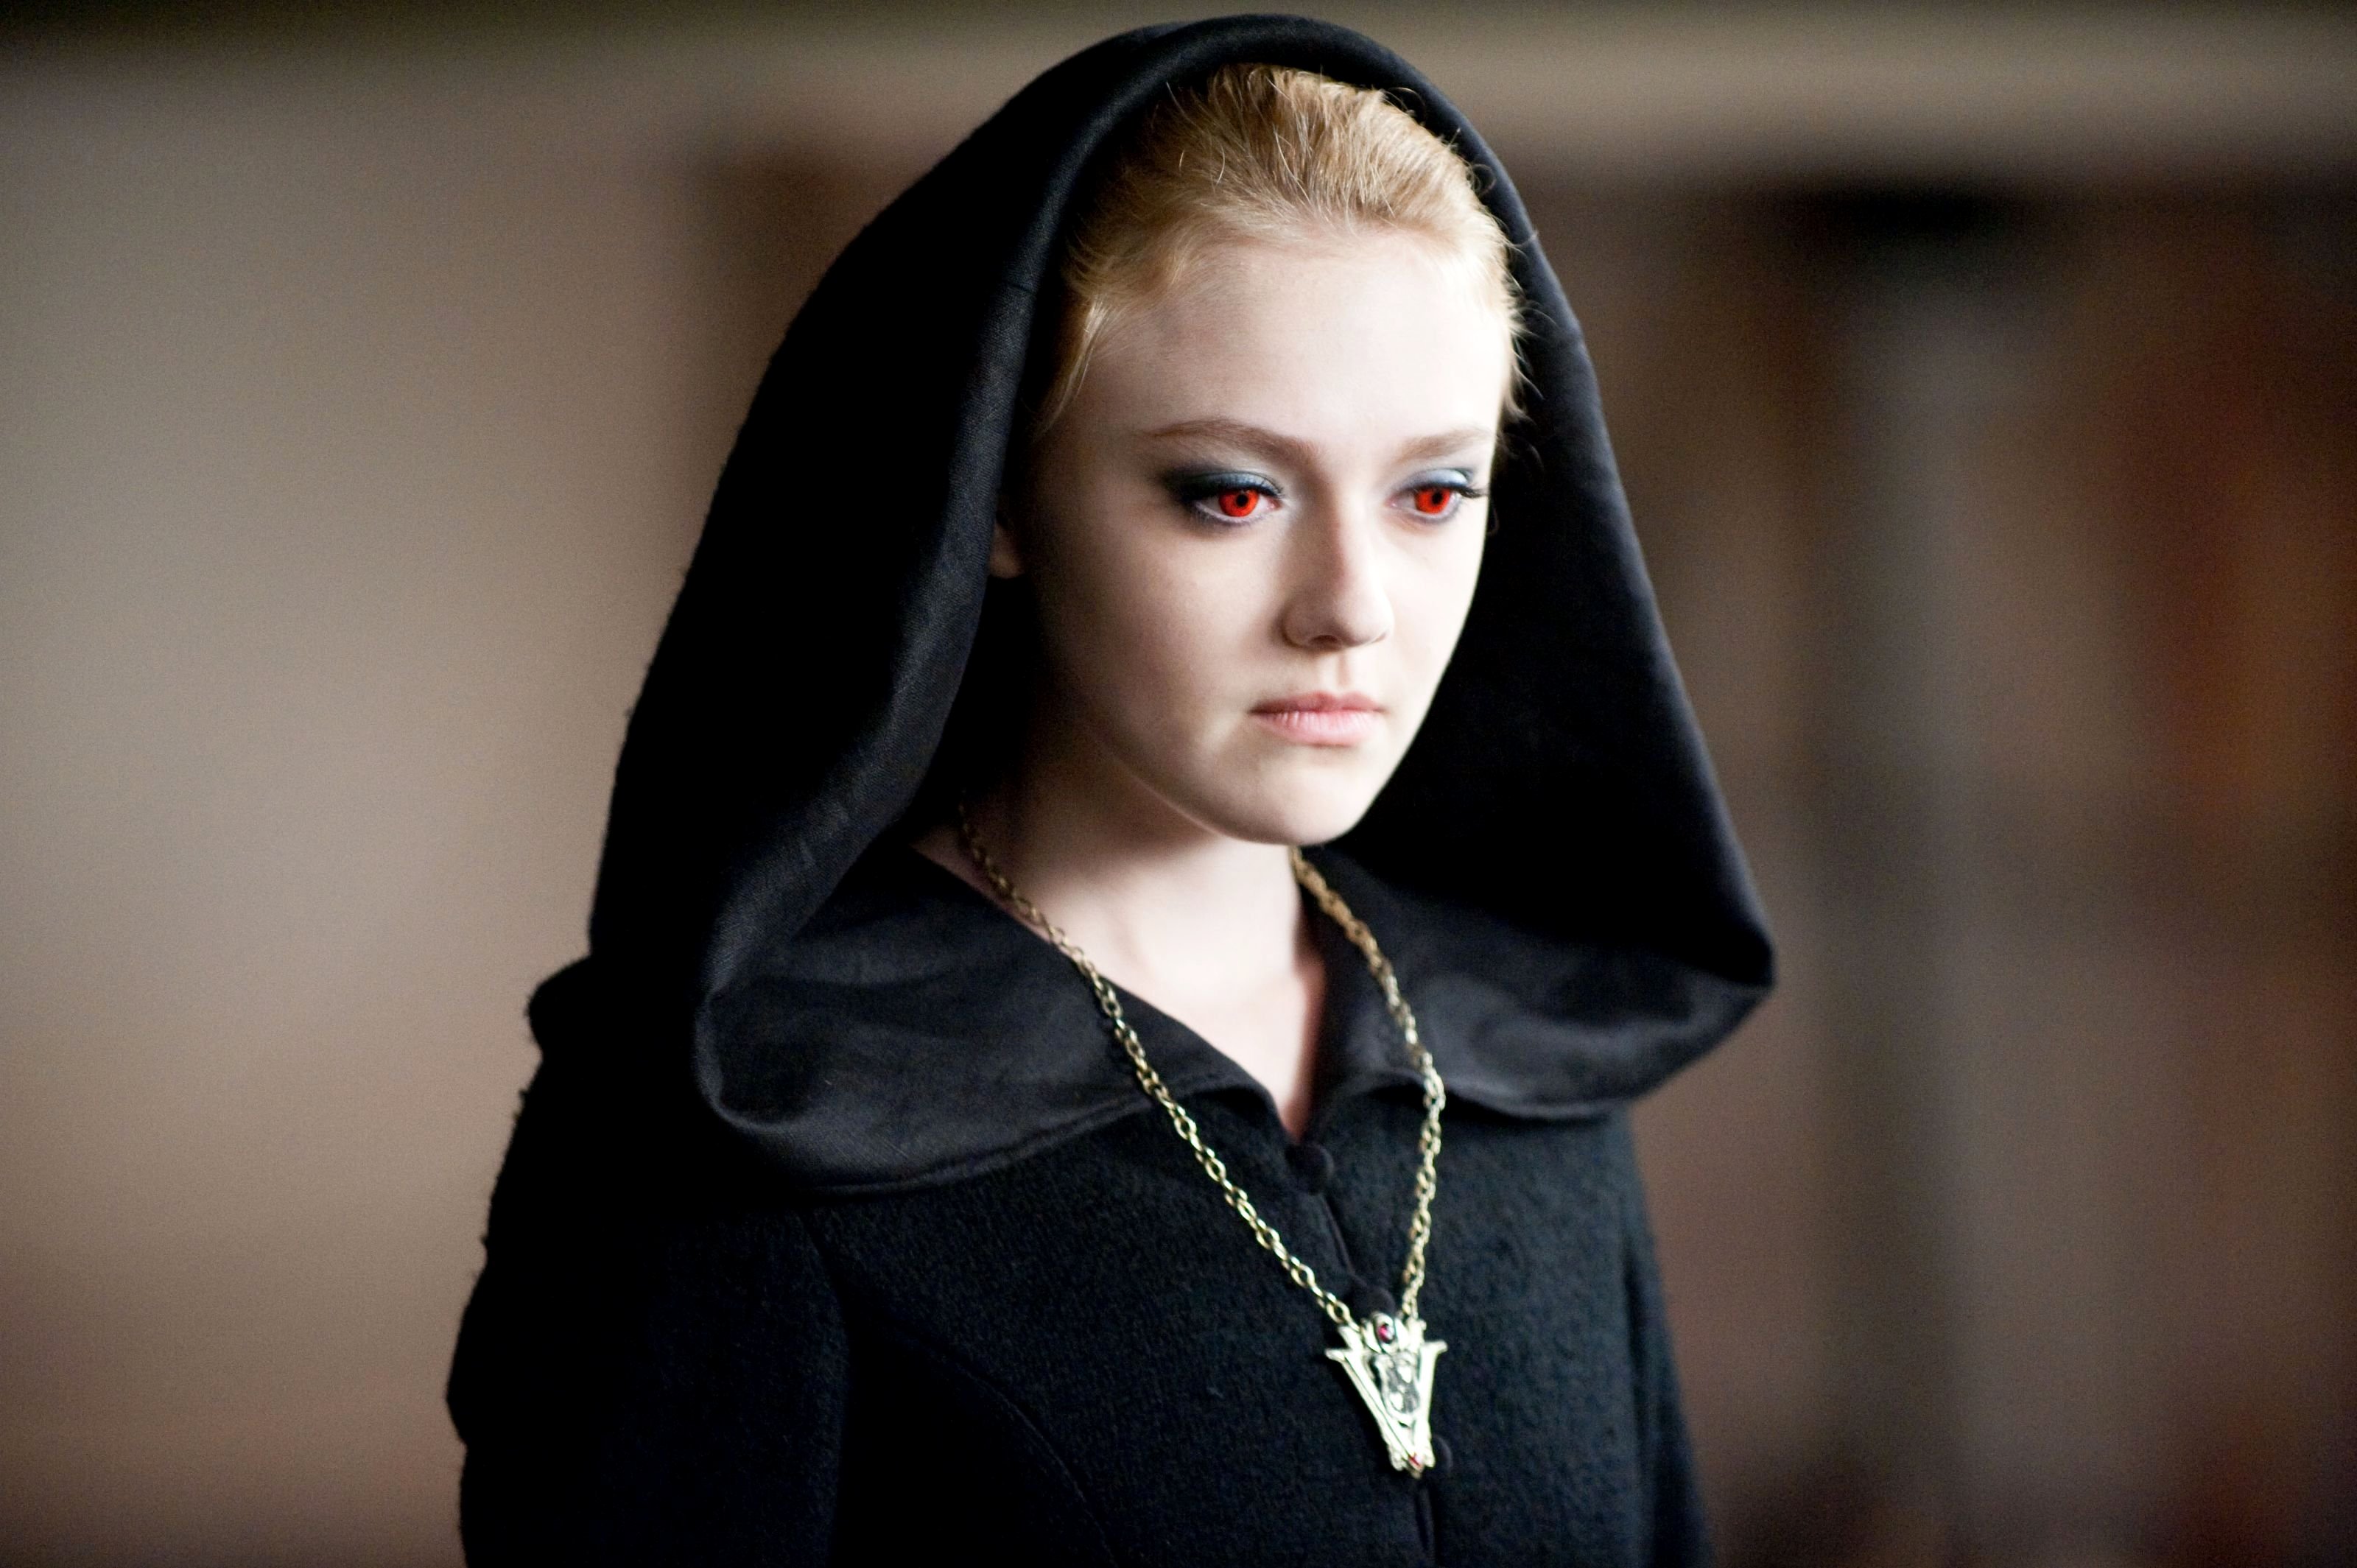 Dakota Fanning stars as Jane in Summit Entertainment's The Twilight Saga's Eclipse (2010)